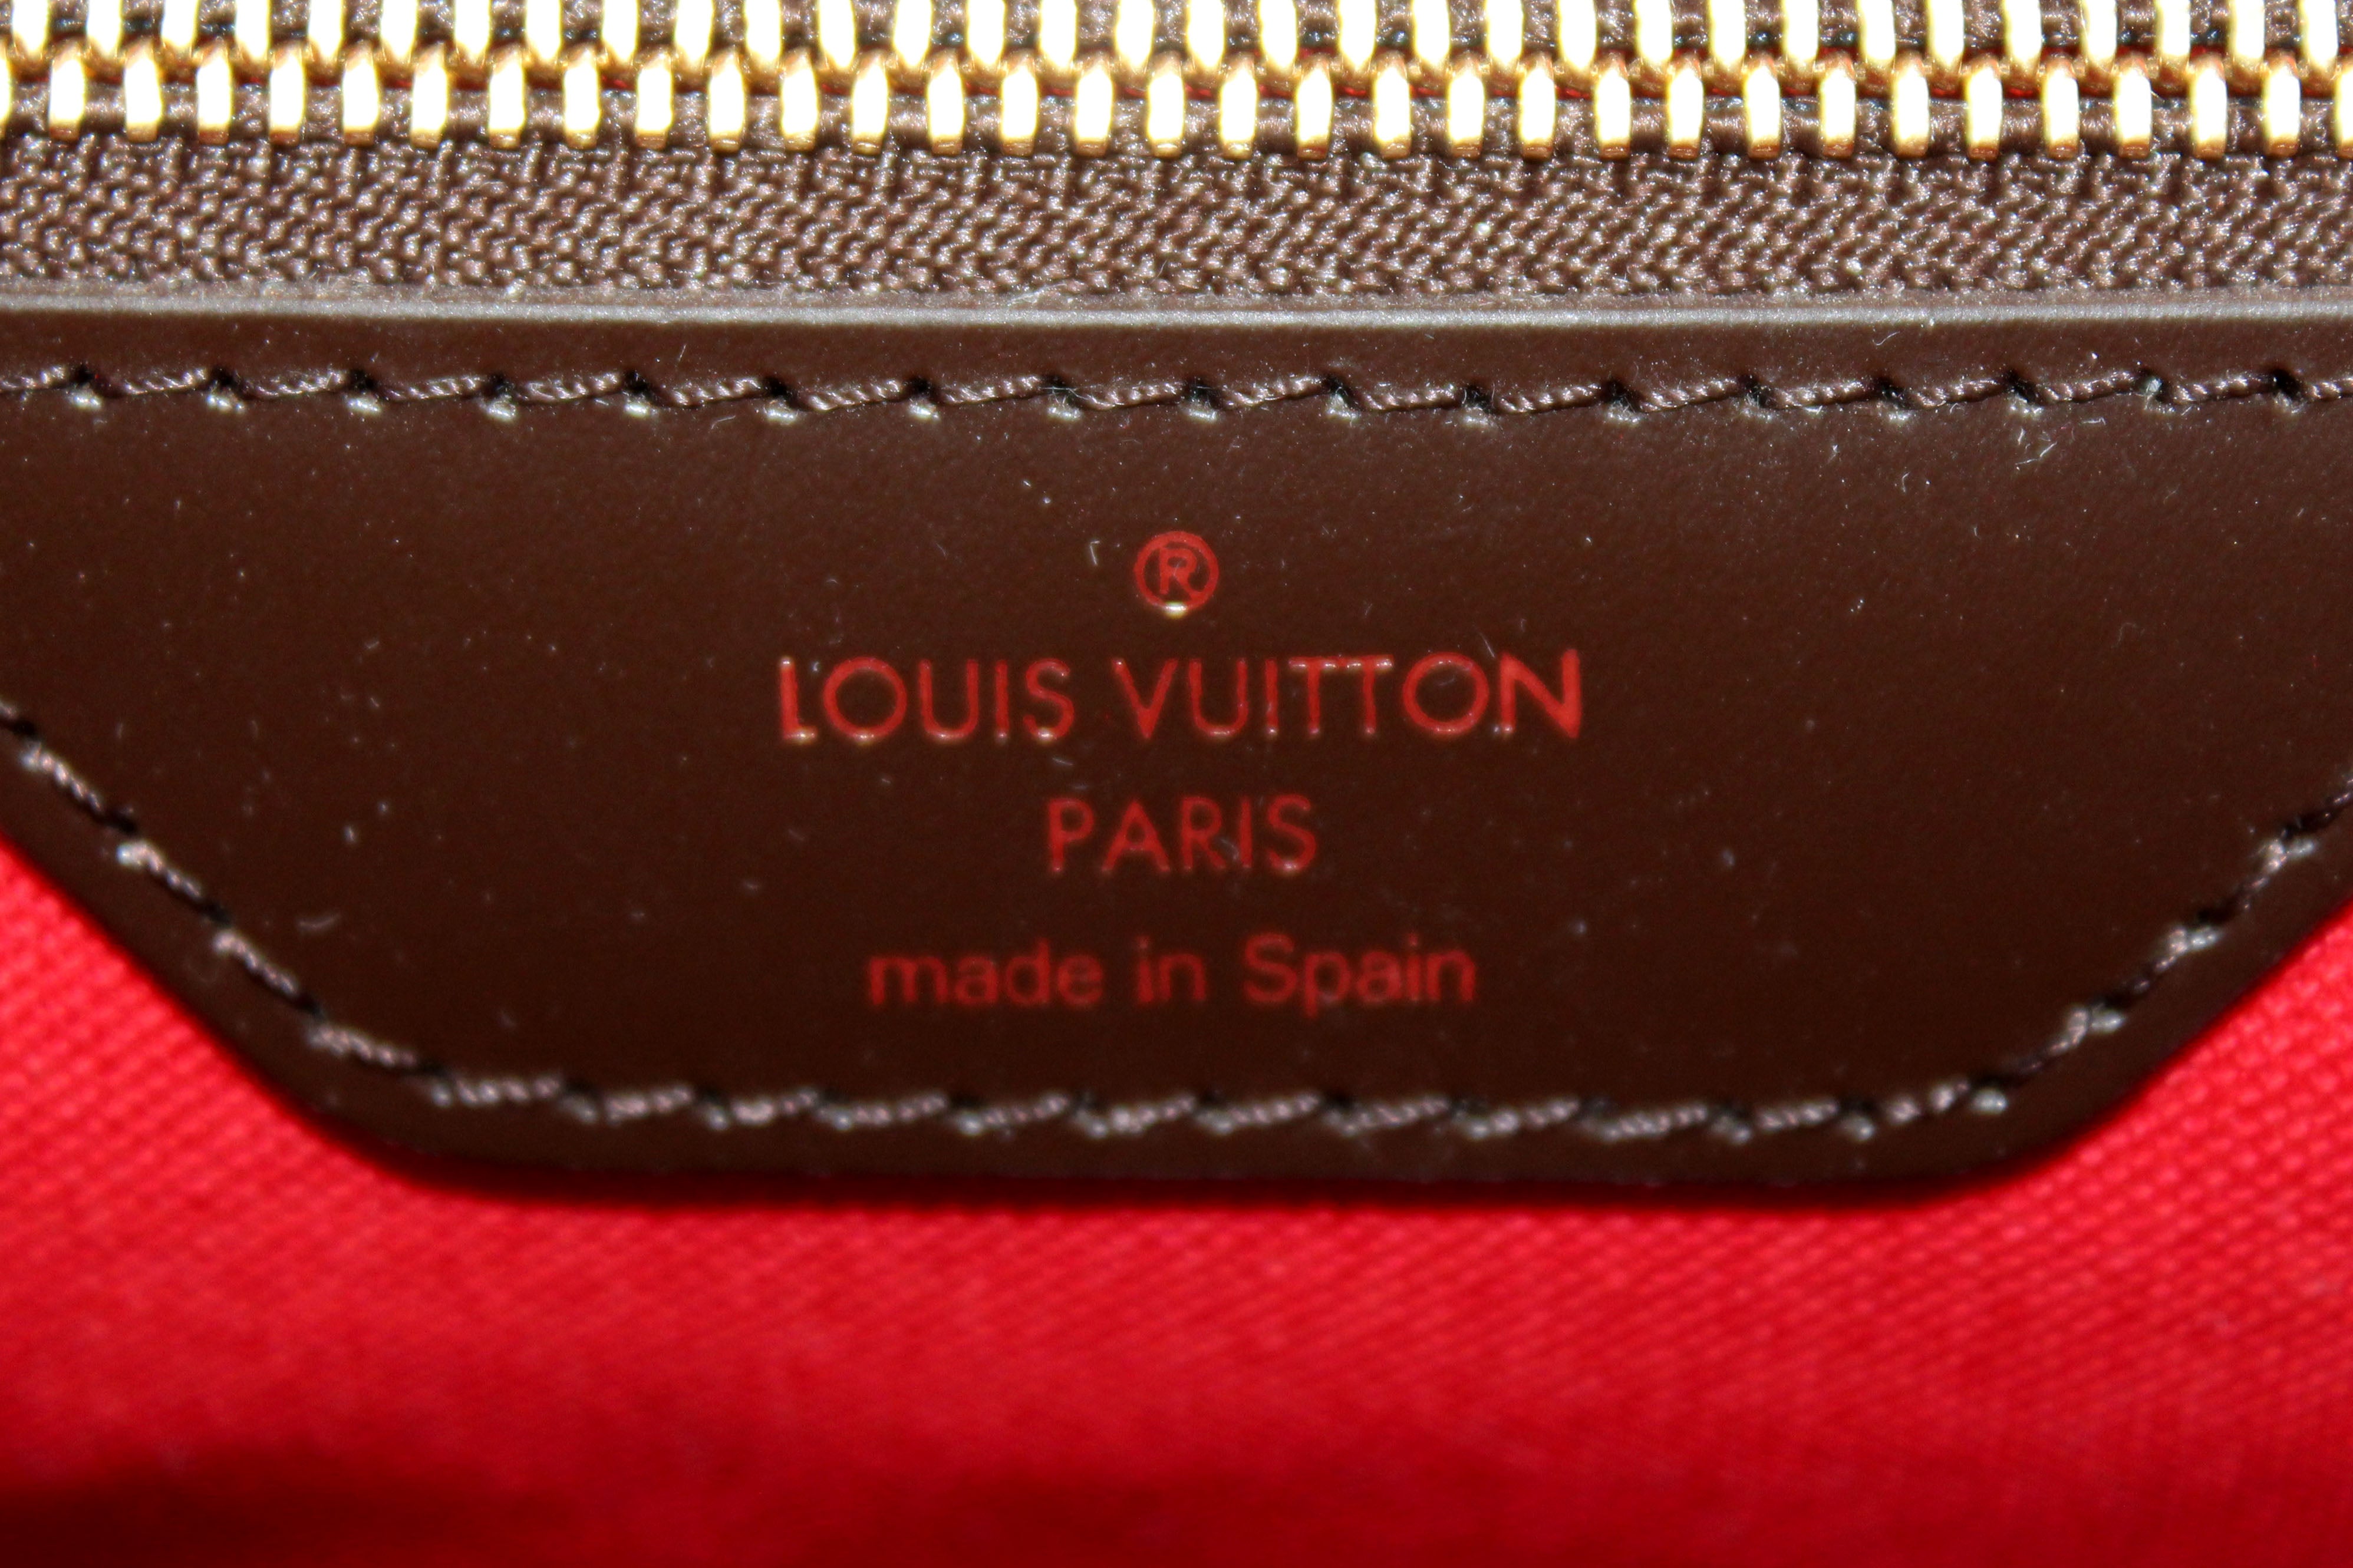 Authenticated Louis Vuitton Damier Ebene Cabas Rivington Brown Canvas Tote  Bag